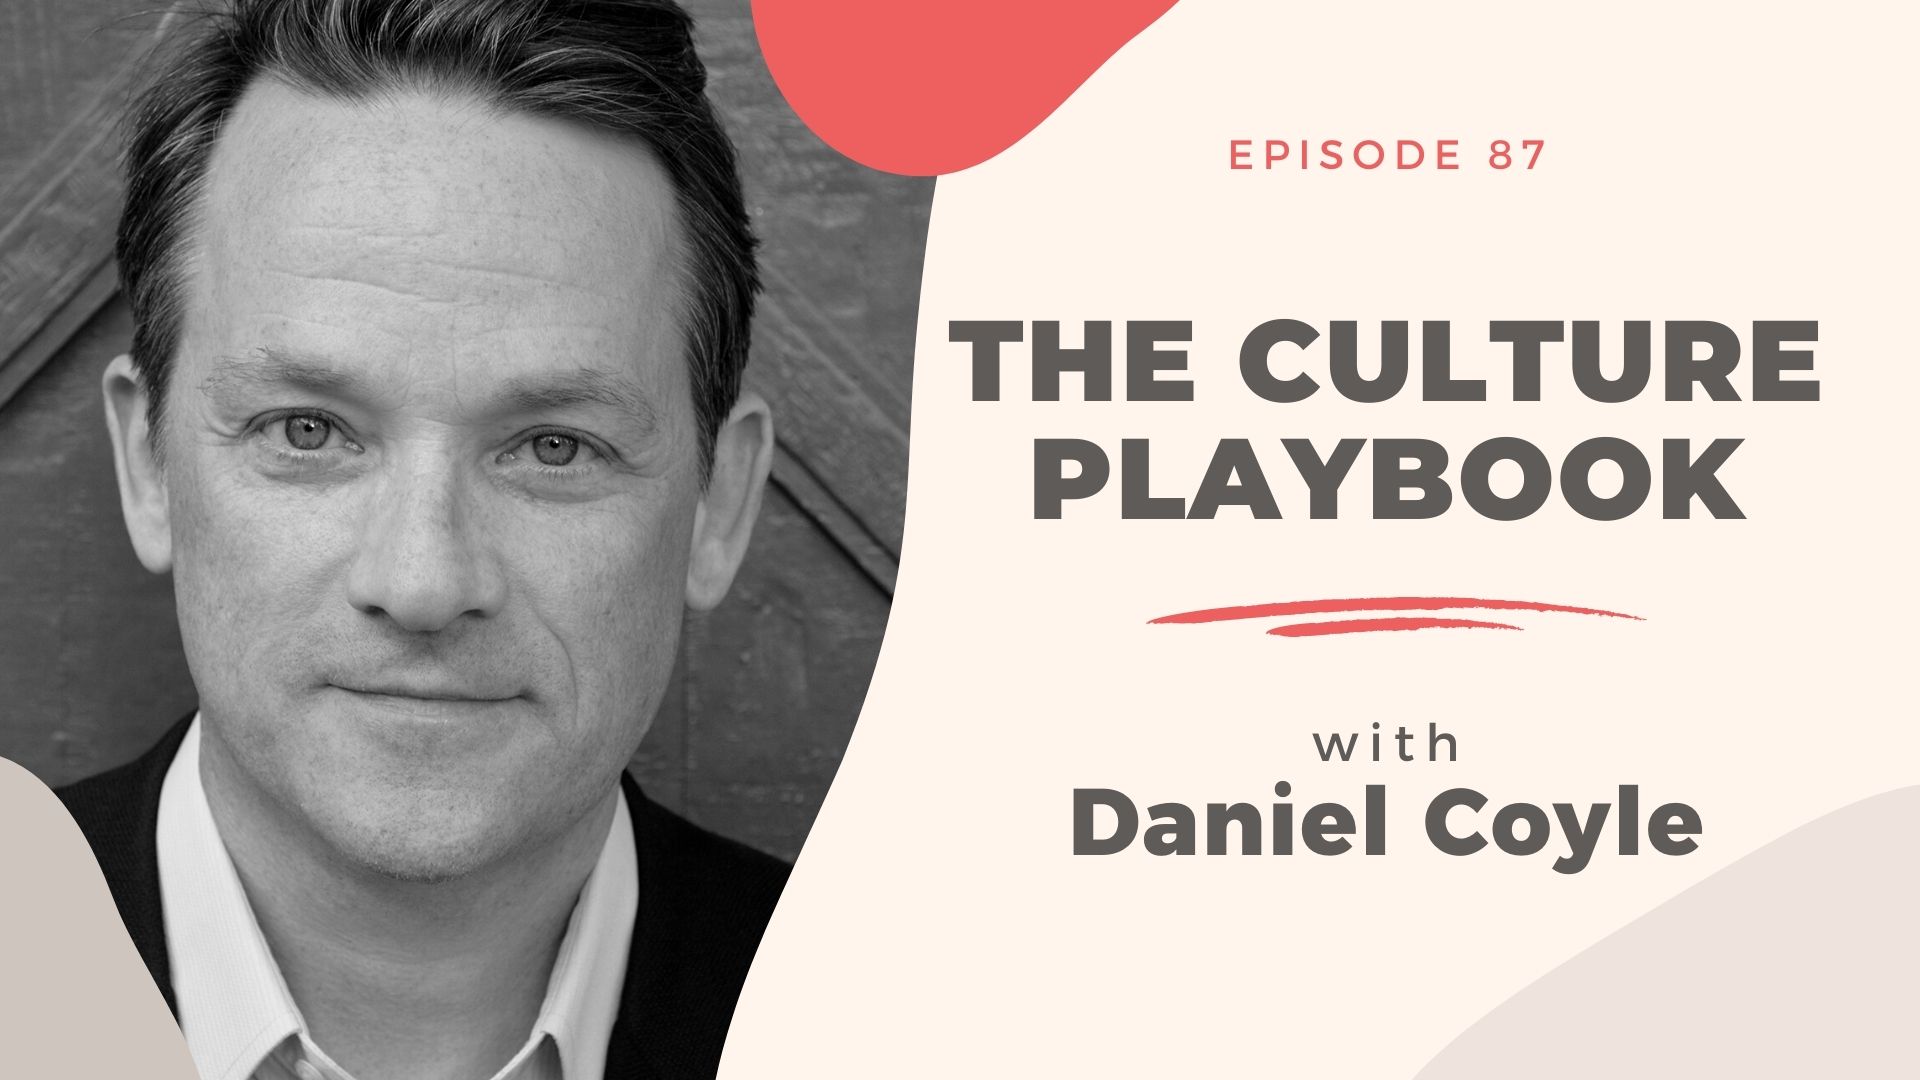 Daniel and the CounterCulture - CultureWatch